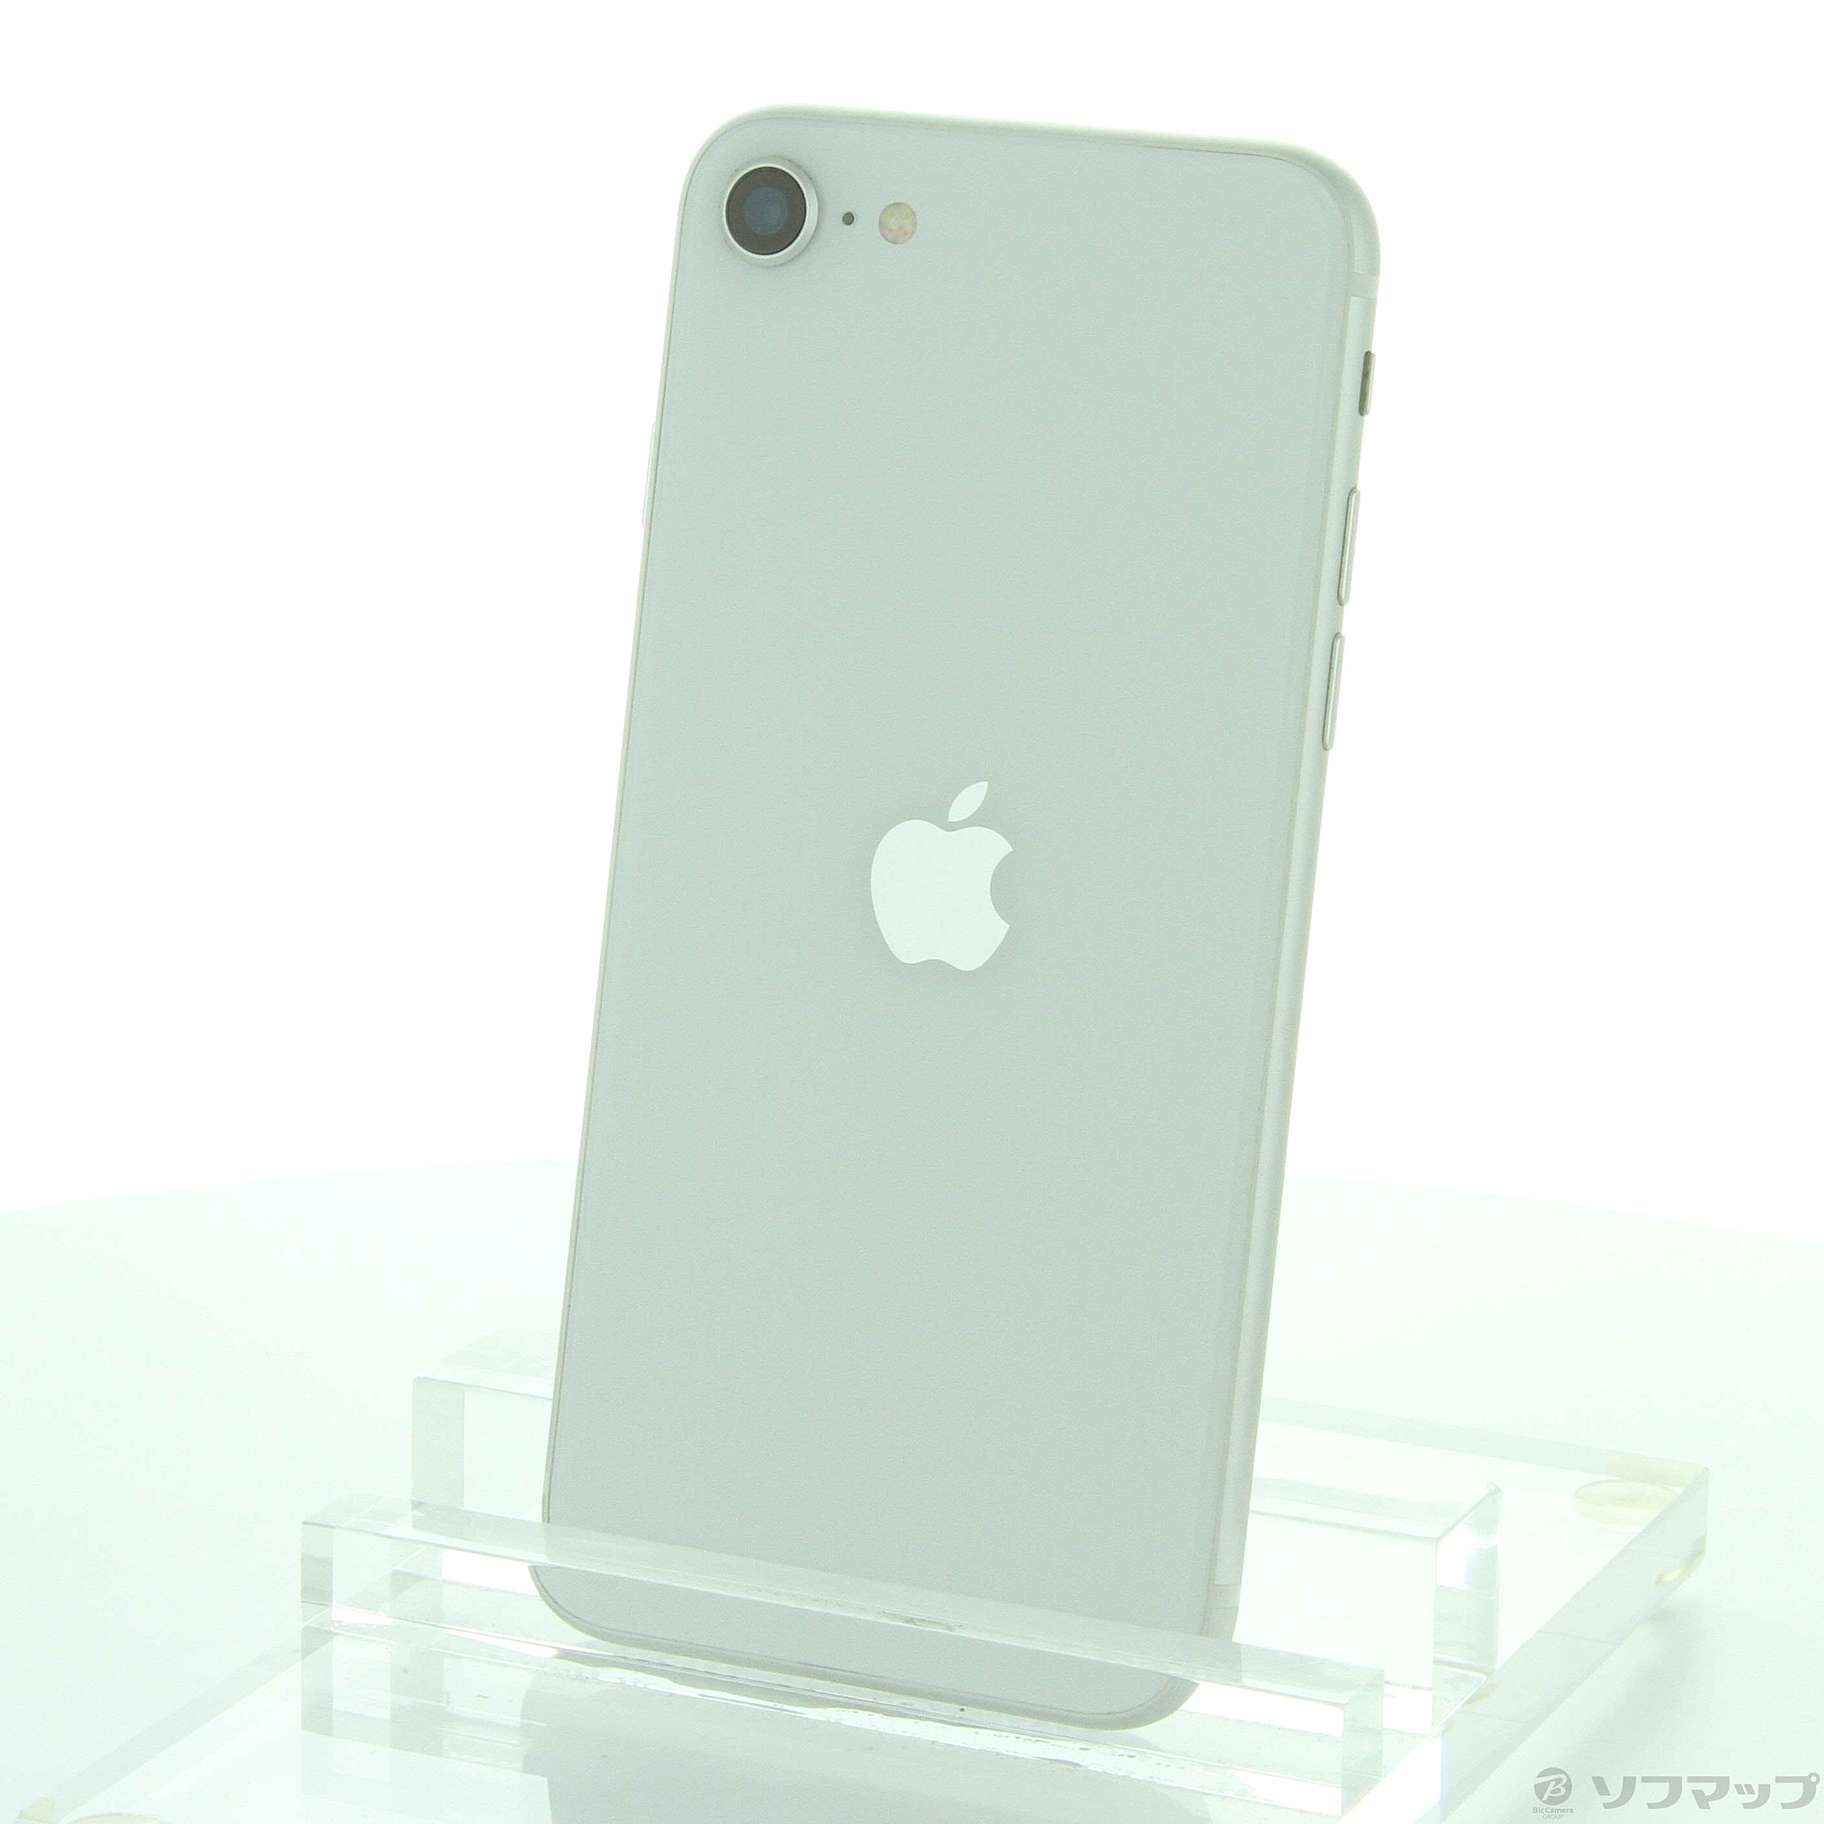 無有効画素数アップル iPhoneSE 第2世代 128GB ホワイト